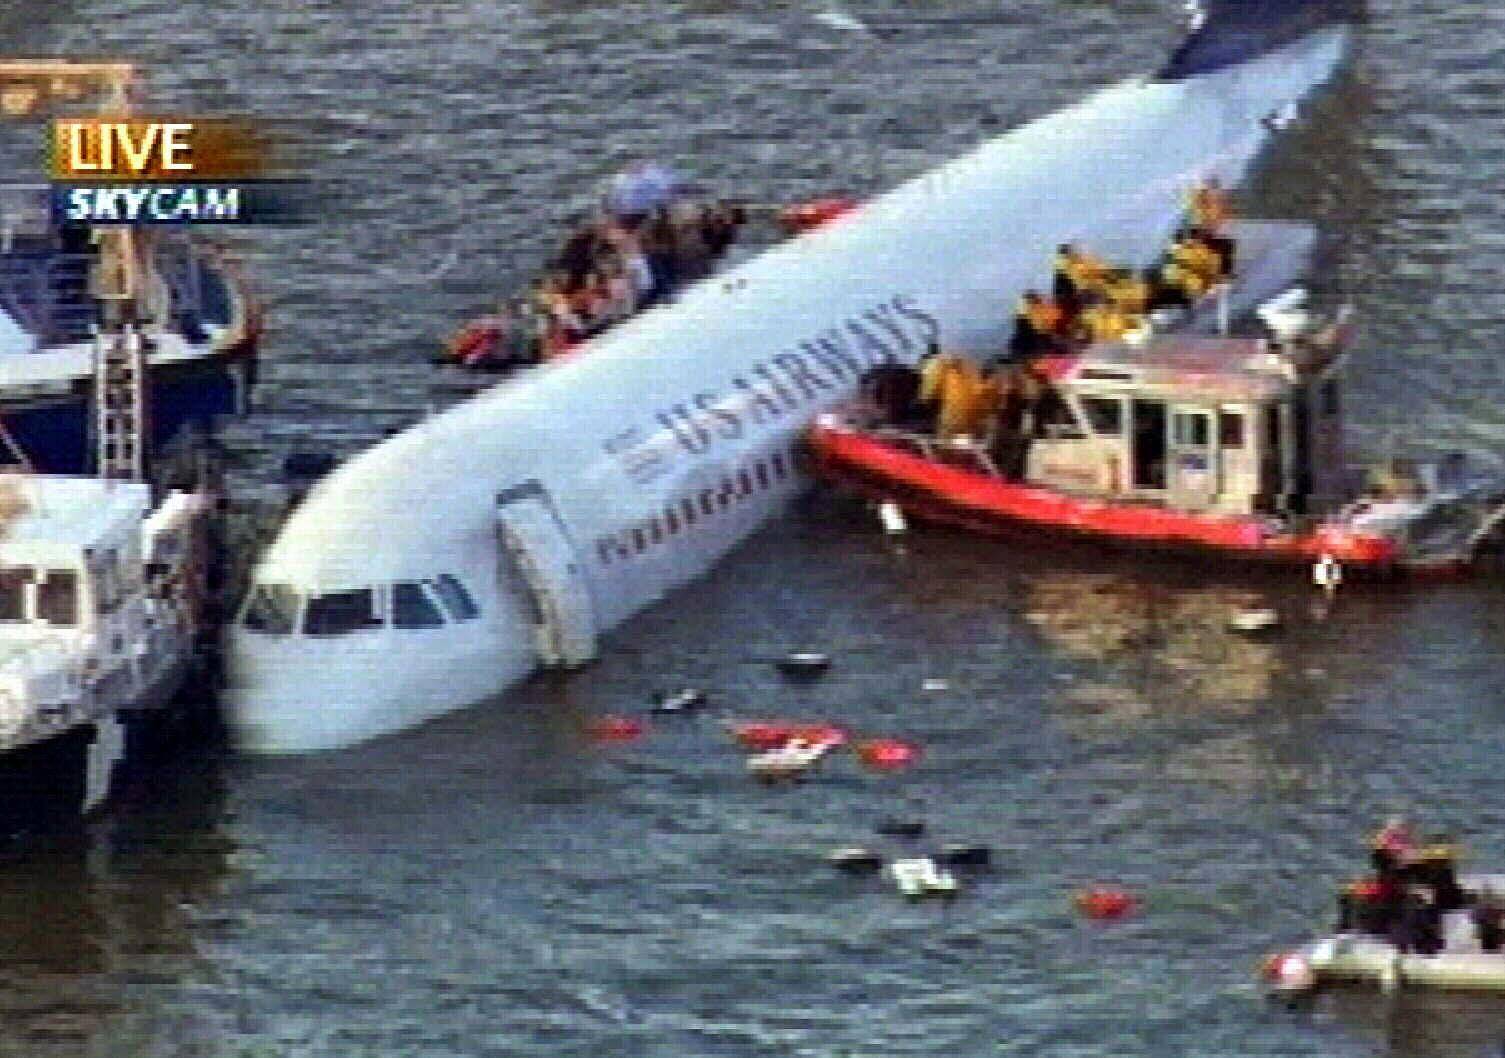 Почему нельзя посадить самолет на воду. много ли известно случаев, когда при аварийной посадке самолета на воду все оставались живы